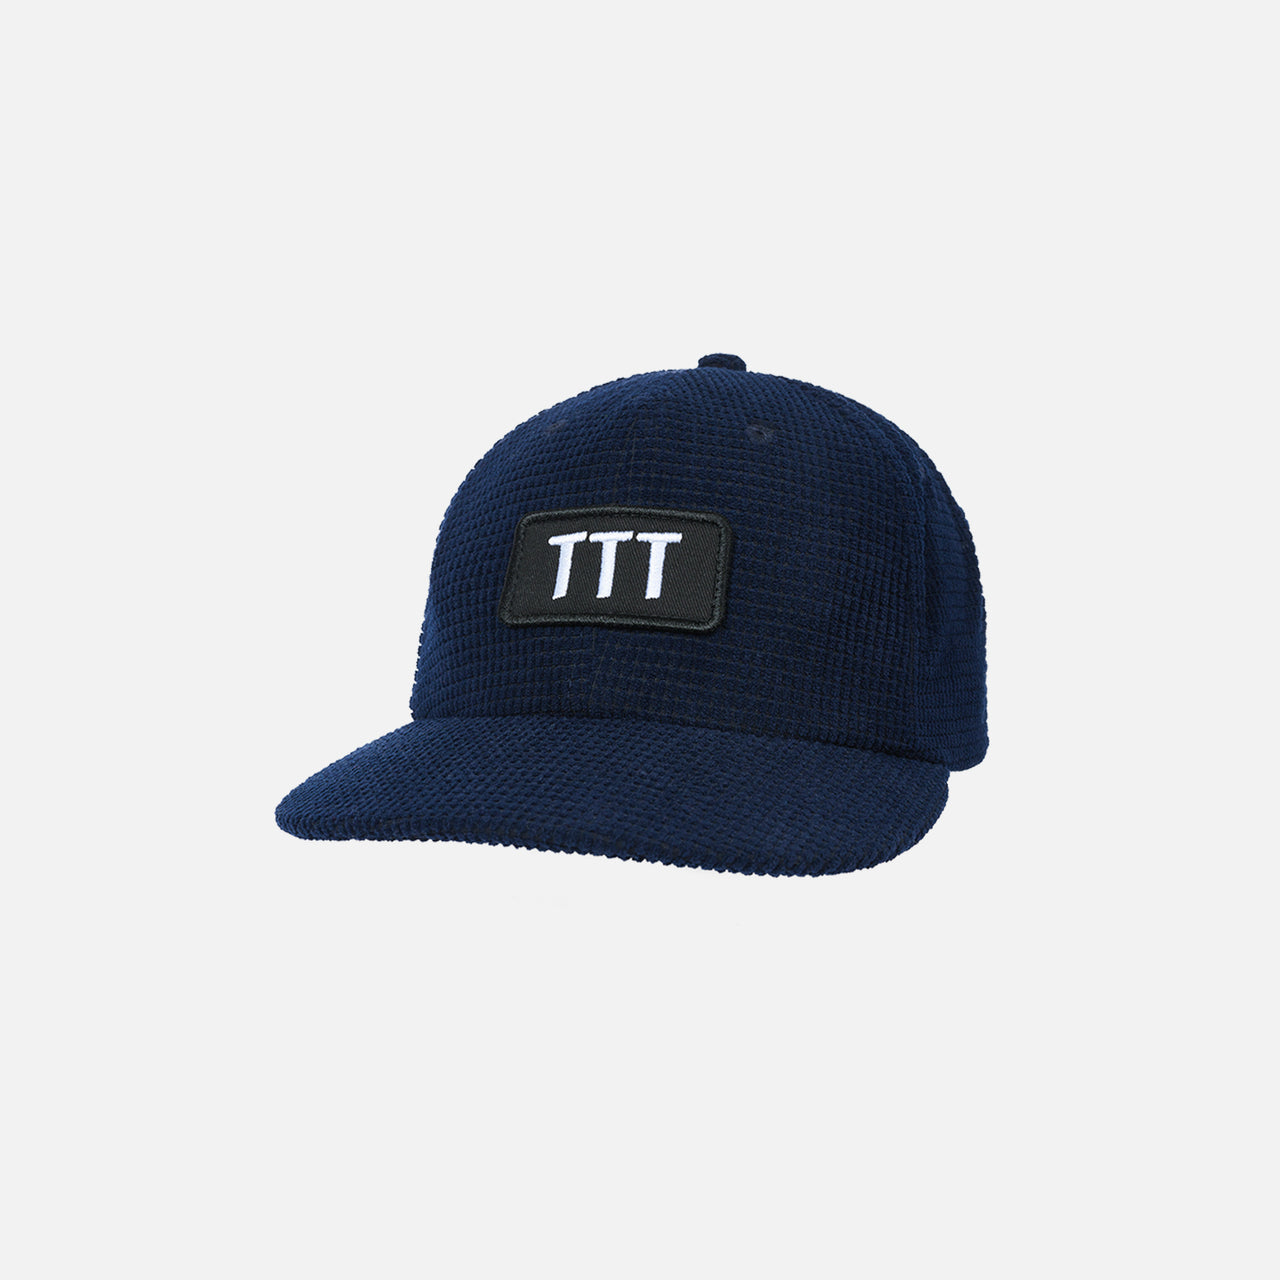 TTT Cord Cap